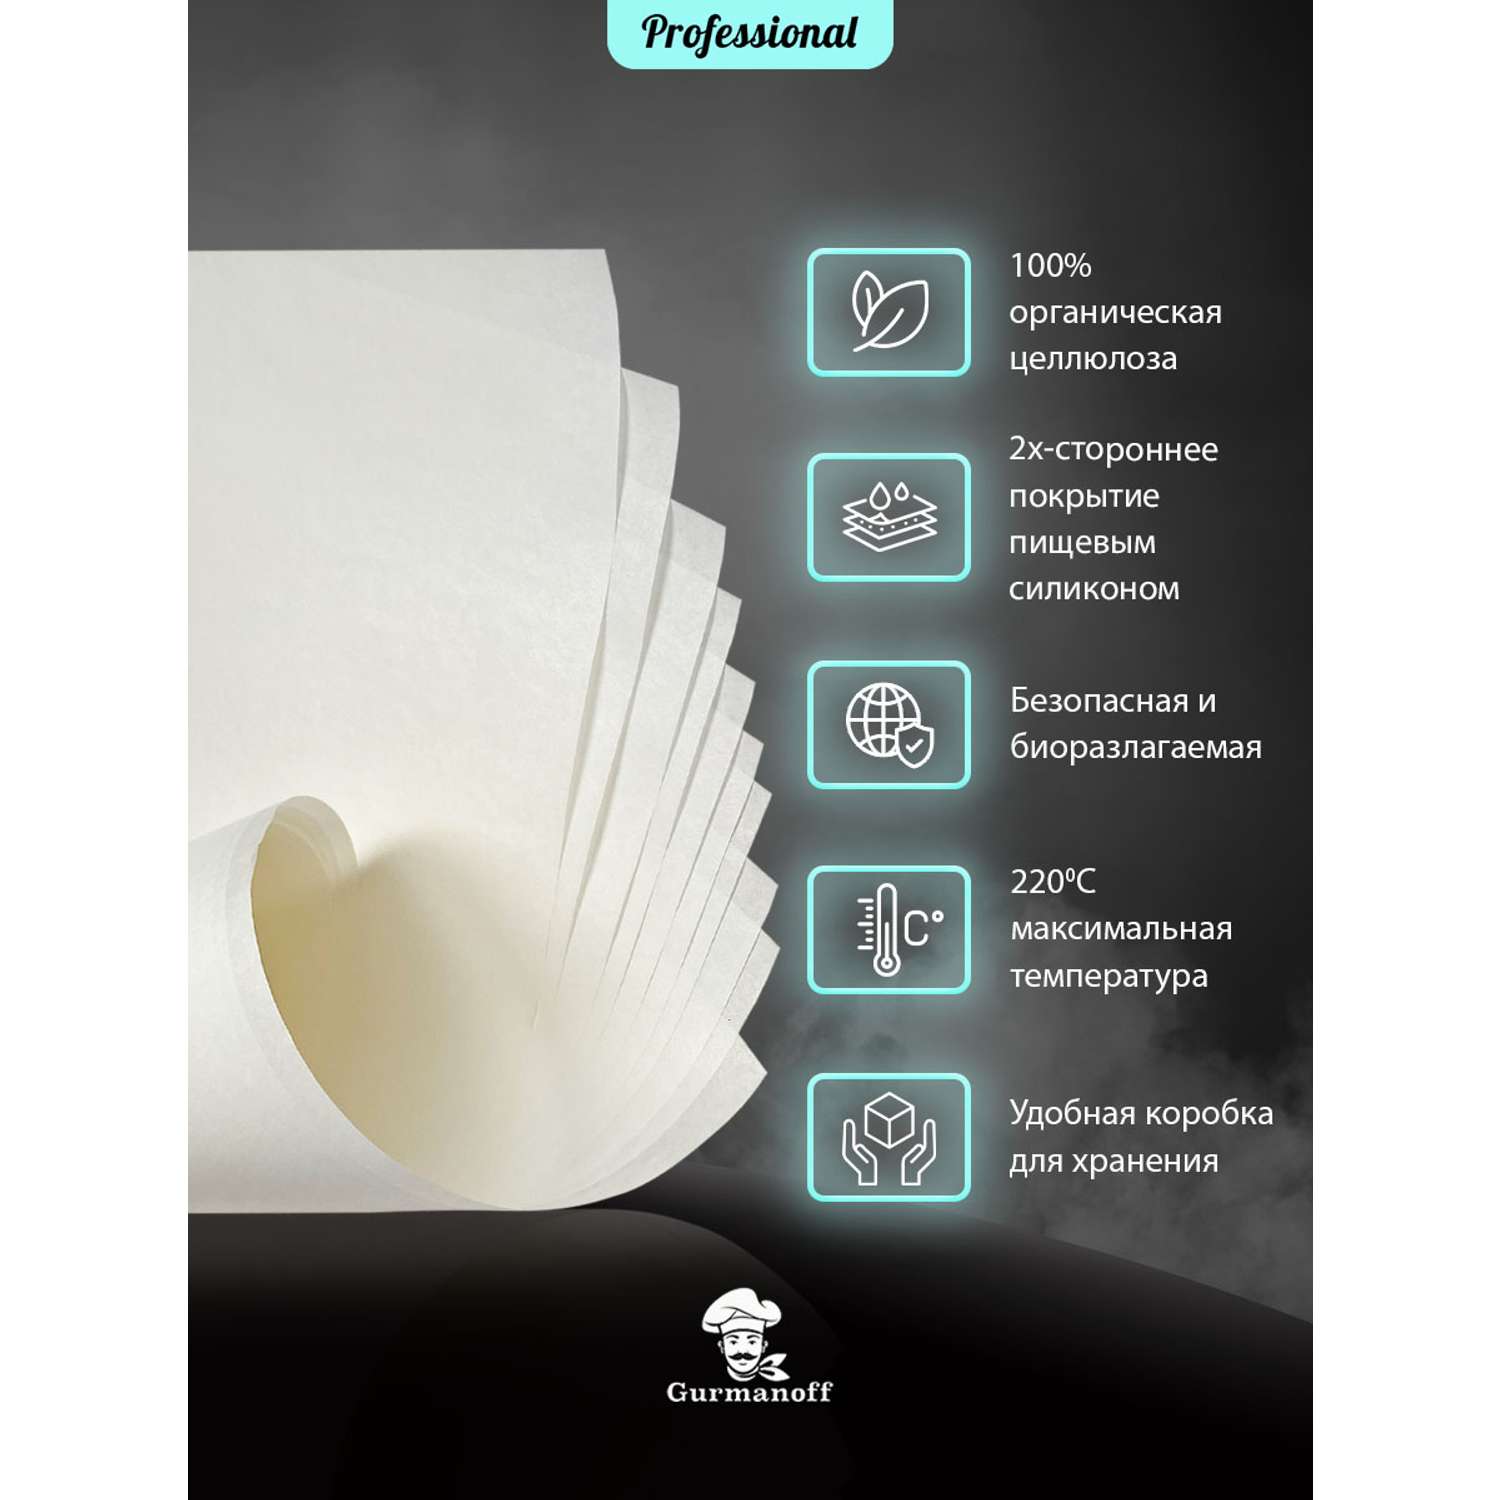 Бумага для выпечки с силиконом Gurmanoff 500 листов 40х60 см 52 мкм 39 гр/м2 белая профессиональная - фото 2